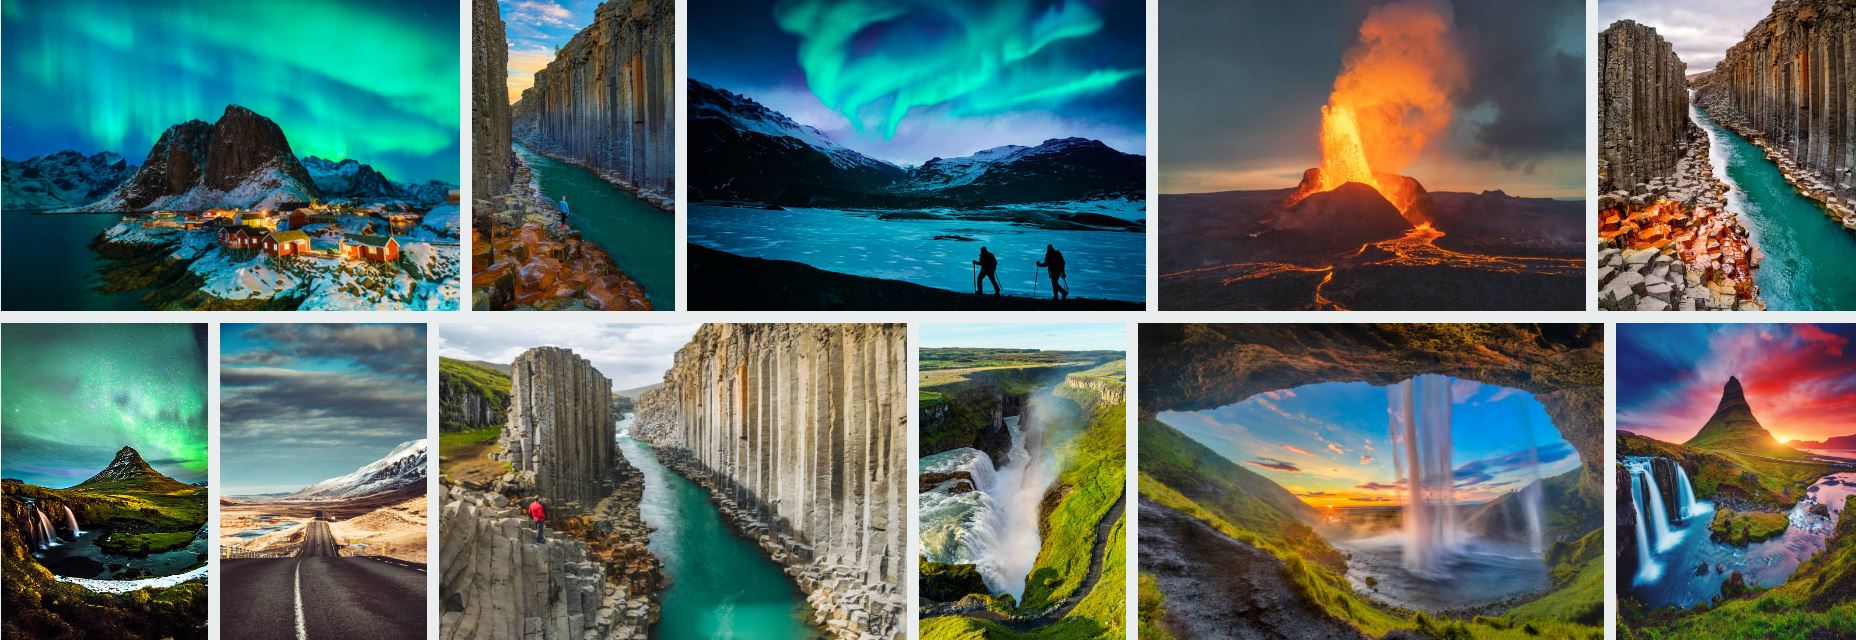 Iceland visa images